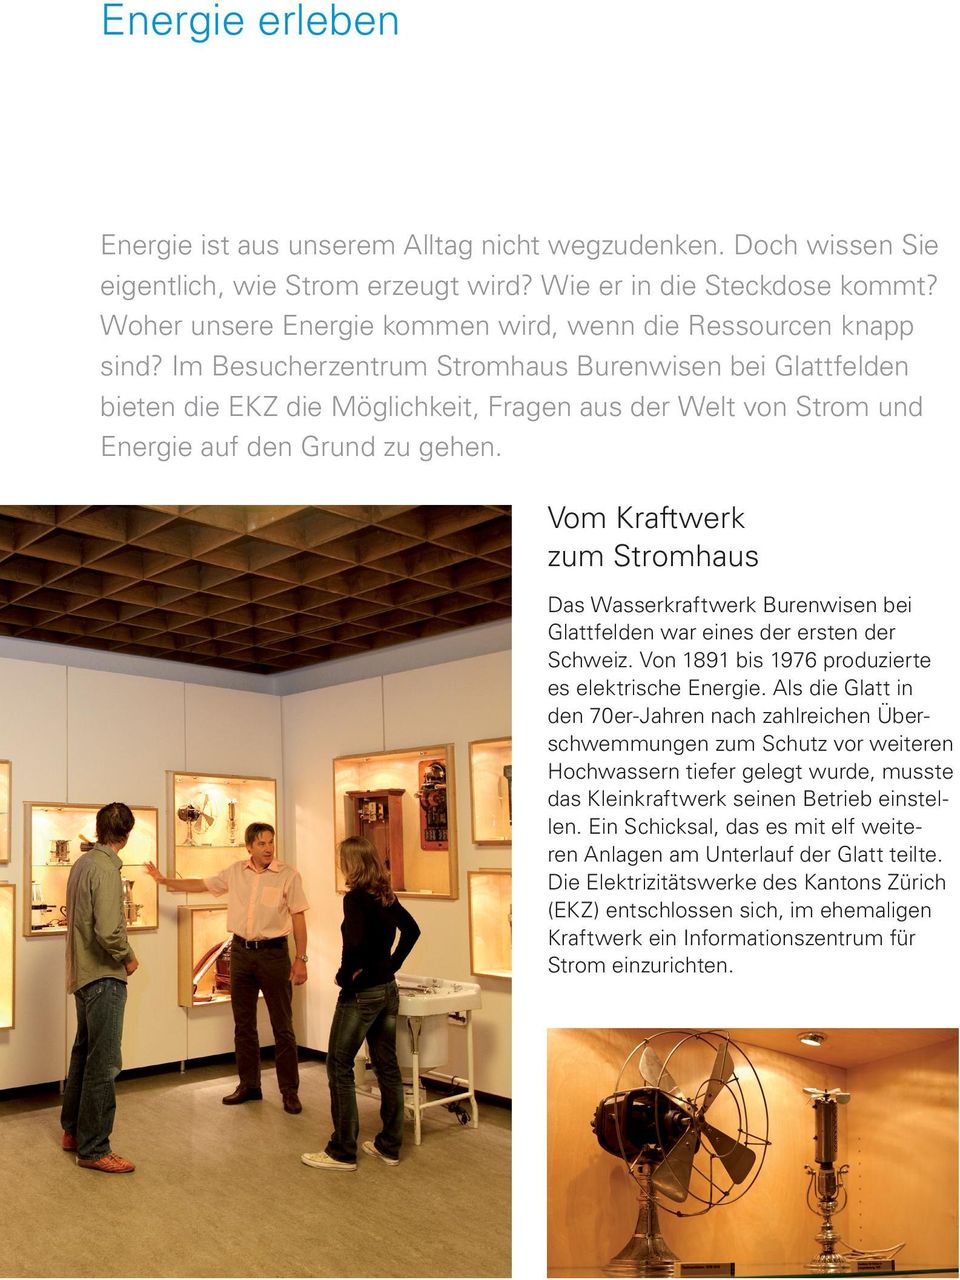 Im Besucherzentrum Stromhaus Burenwisen bei Glattfelden bieten die EKZ die Möglichkeit, Fragen aus der Welt von Strom und Energie auf den Grund zu gehen.